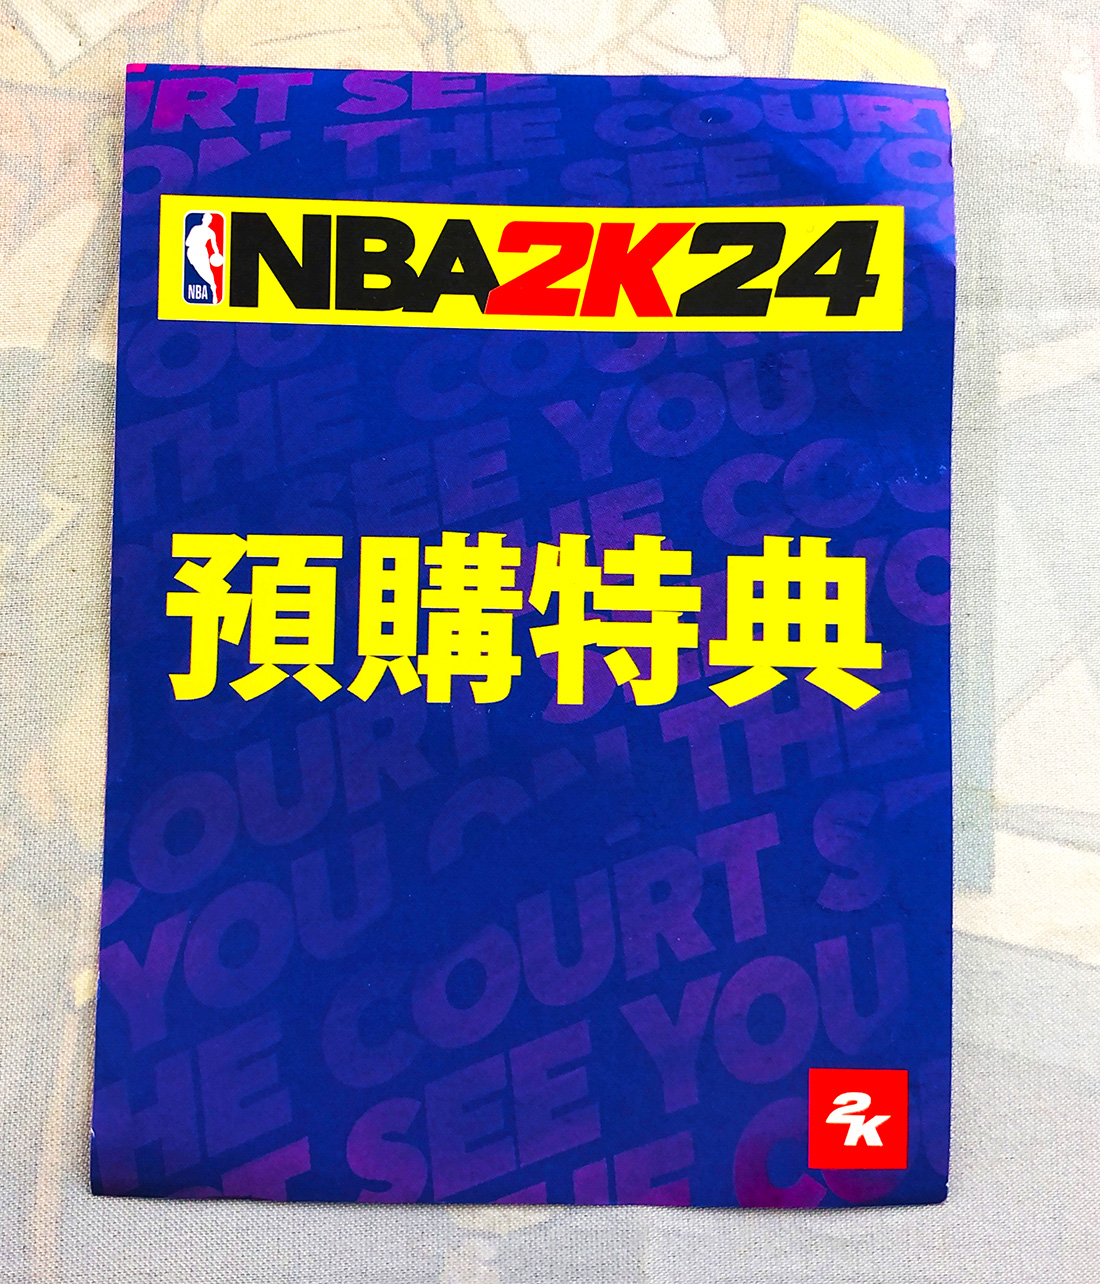 PS5 PS4 NS篮球24 NBA2K24虚拟货币兑换卡 2000VC 拍照发卡密